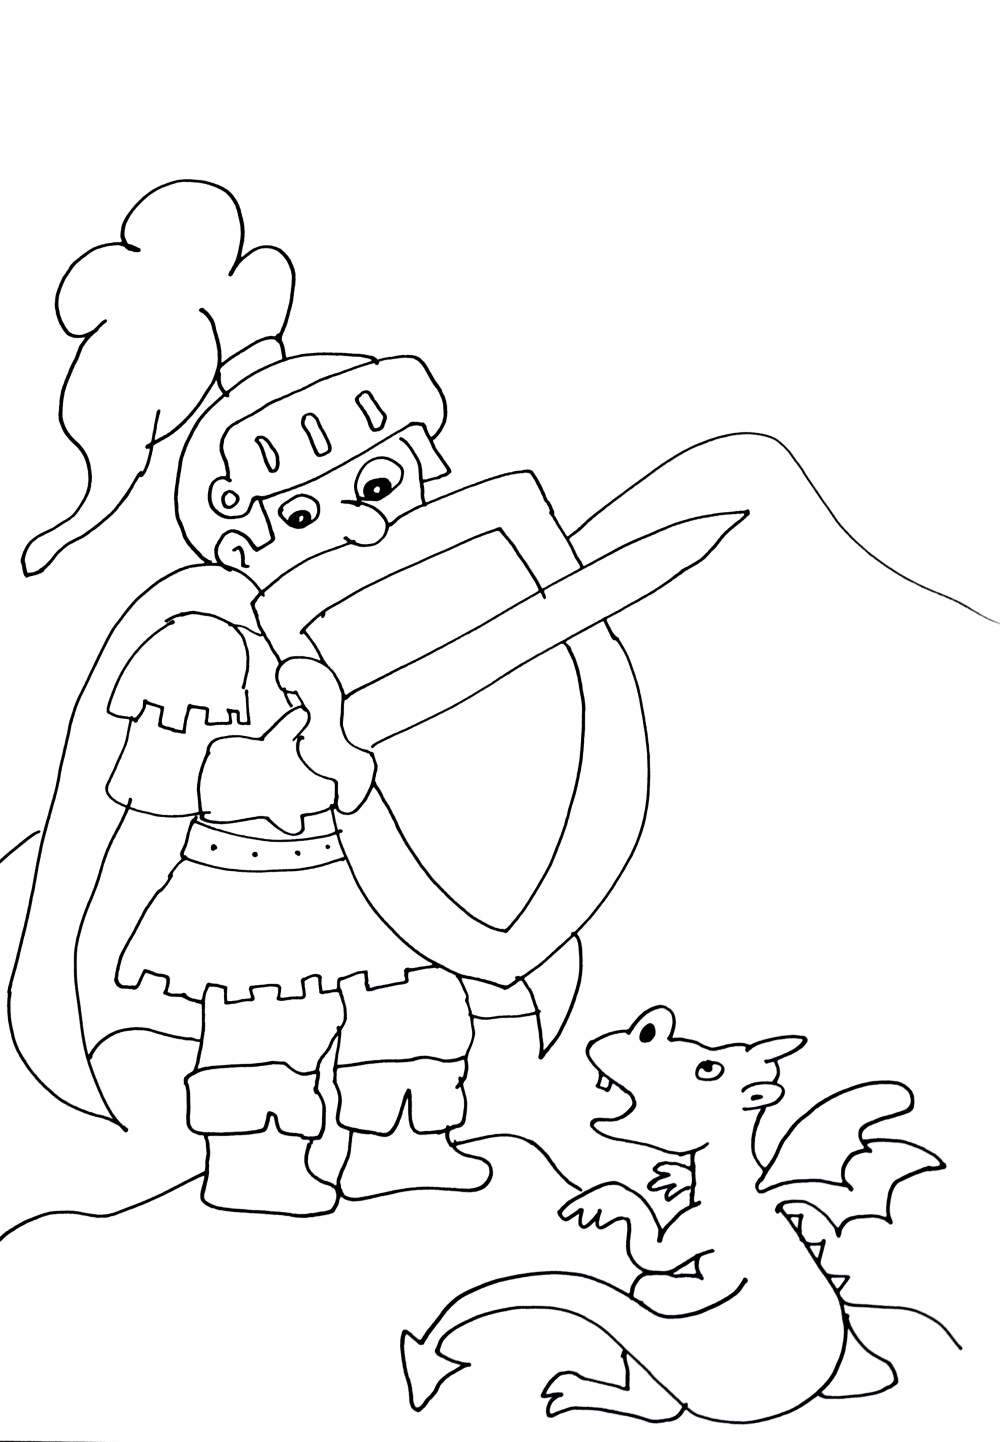 Cavaleiro medroso em frente a um dragãozinho para colorir